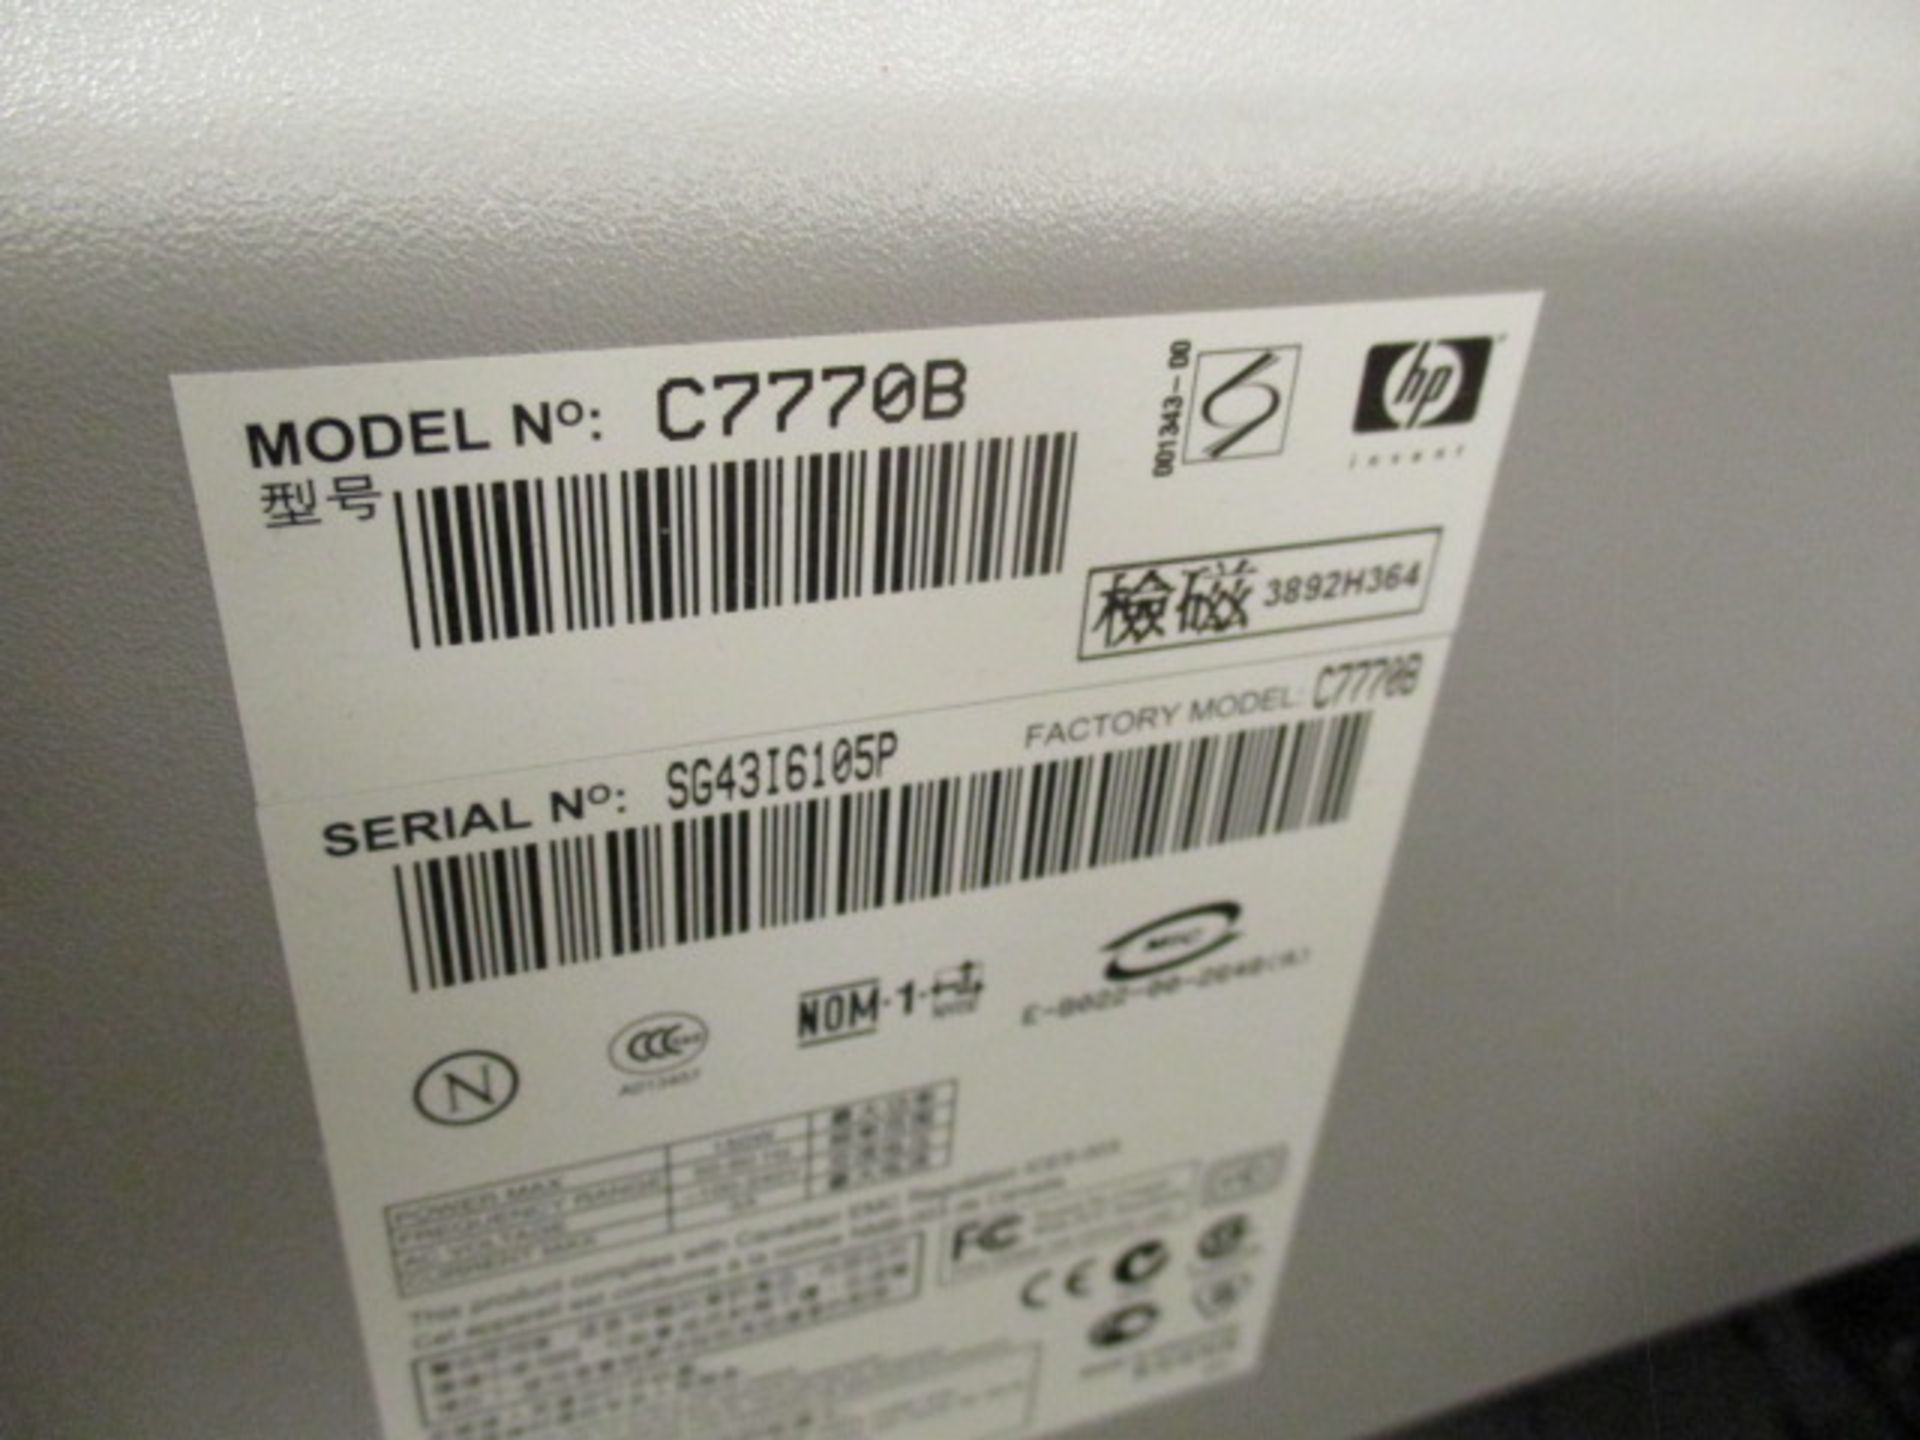 HP DesignJet-500/C7770B 42" Roll Large Format Color Inkjet Printer s/n-SG4316105. LOC: Area-36. - Image 4 of 4